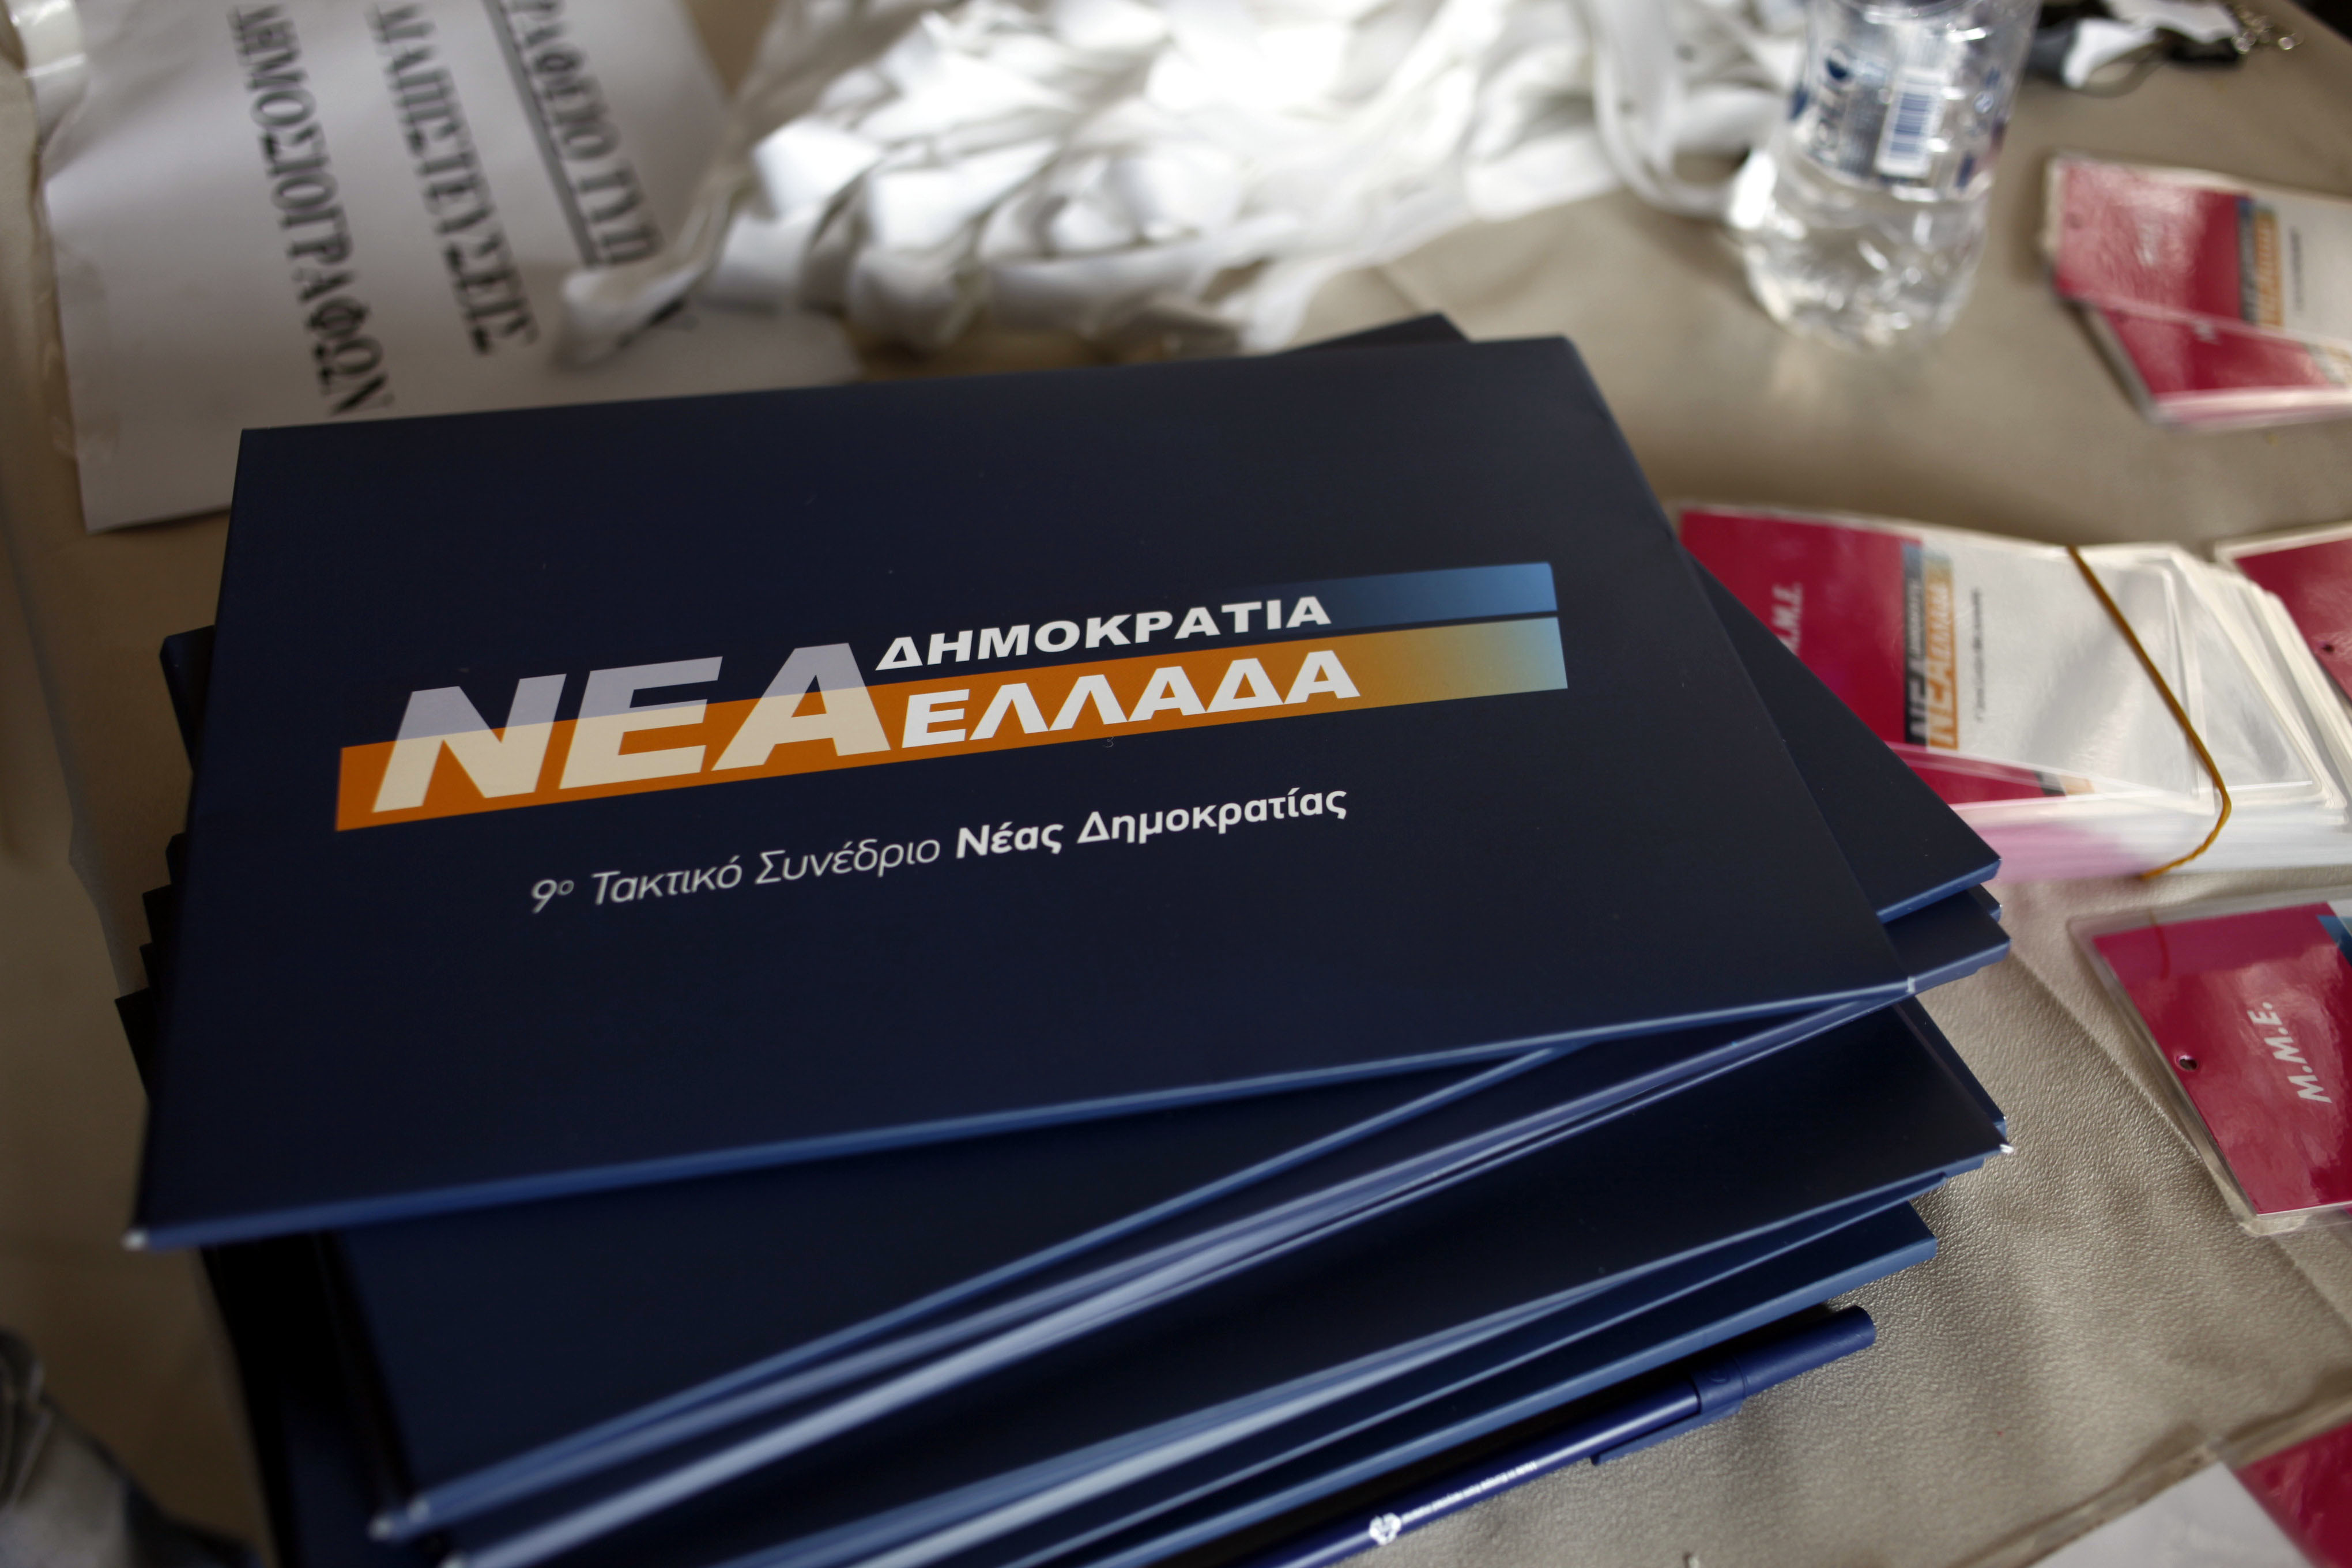 Η Νέα Δημοκρατία γίνεται Νέα Ελλάδα; Στο προσκήνιο ξανά η αλλαγή ονόματος της ΝΔ – Φούντωσε τα σενάρια η ομιλία Σαμαρά στο συνέδριο